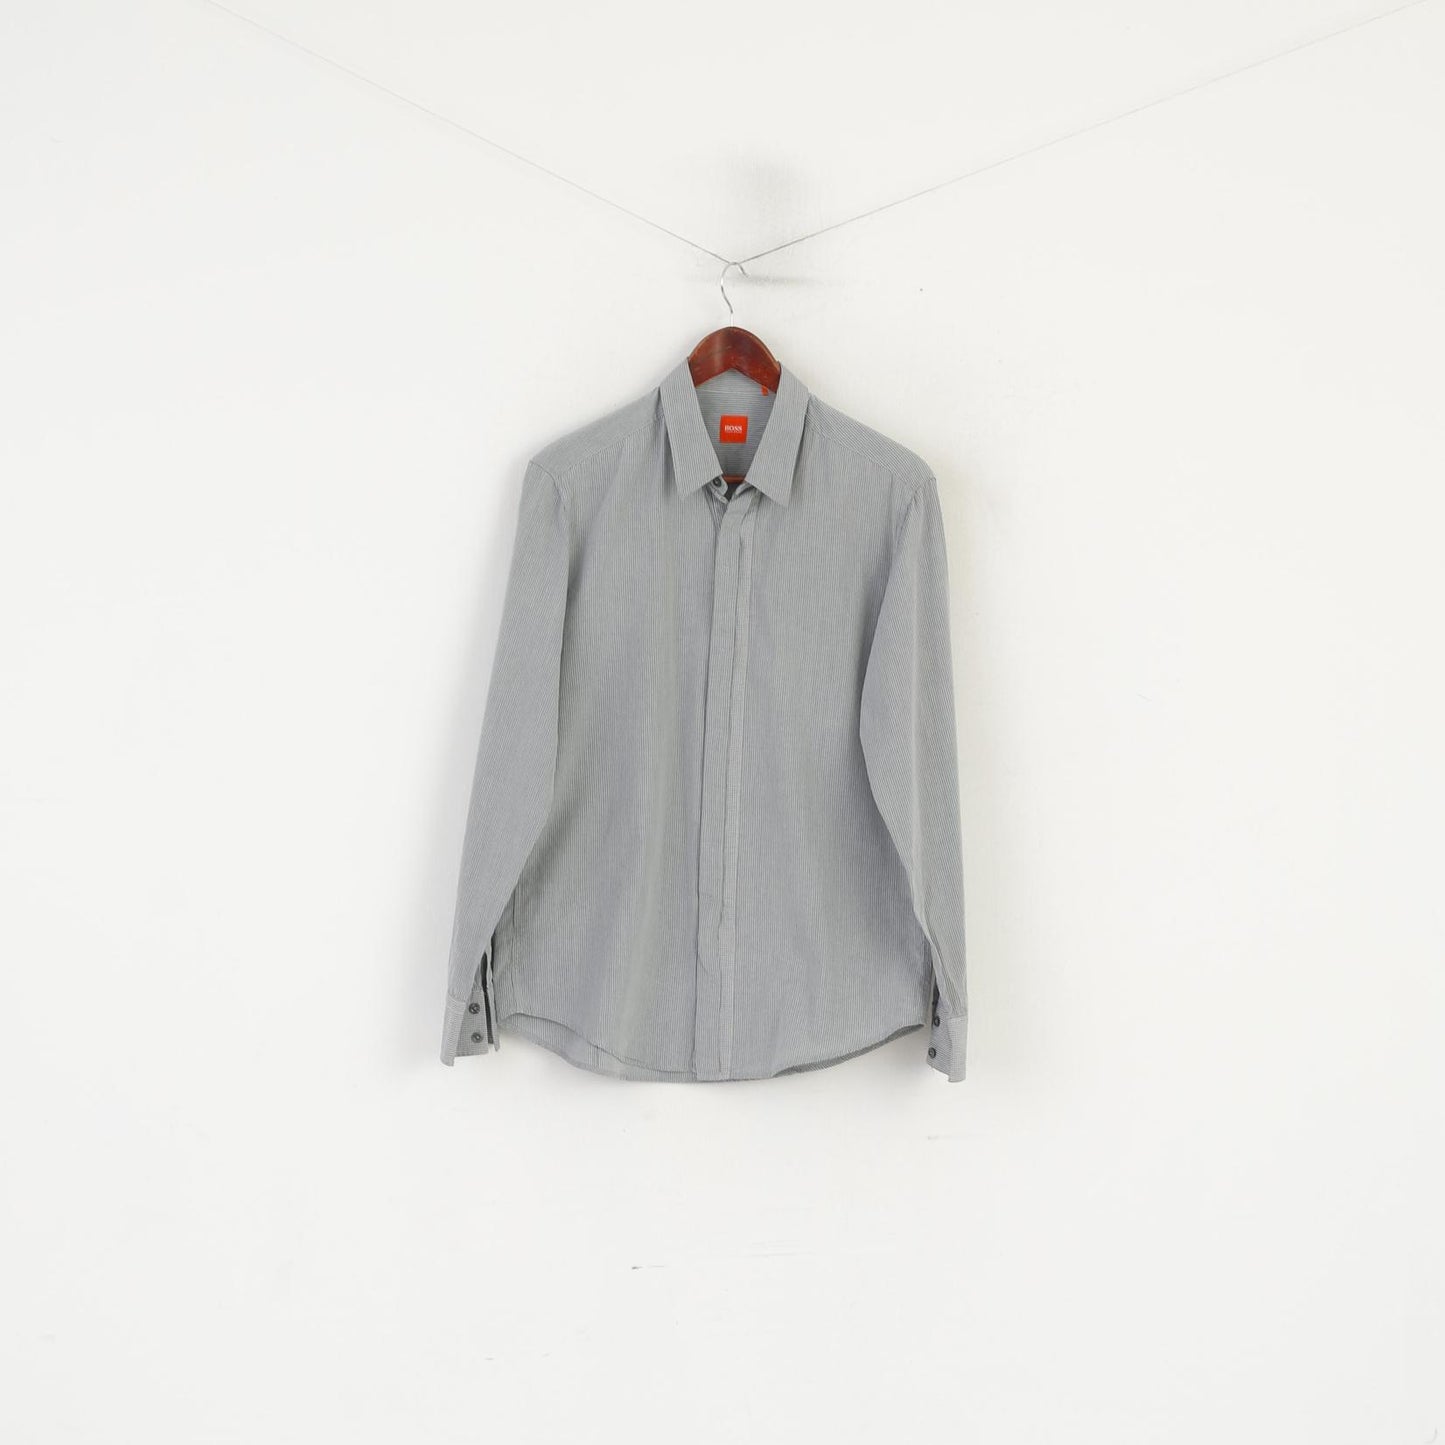 Hugo Boss Men L (M) Casual Shirt Grey Striped Cotton Hidden Buttons Long Sleeve Top